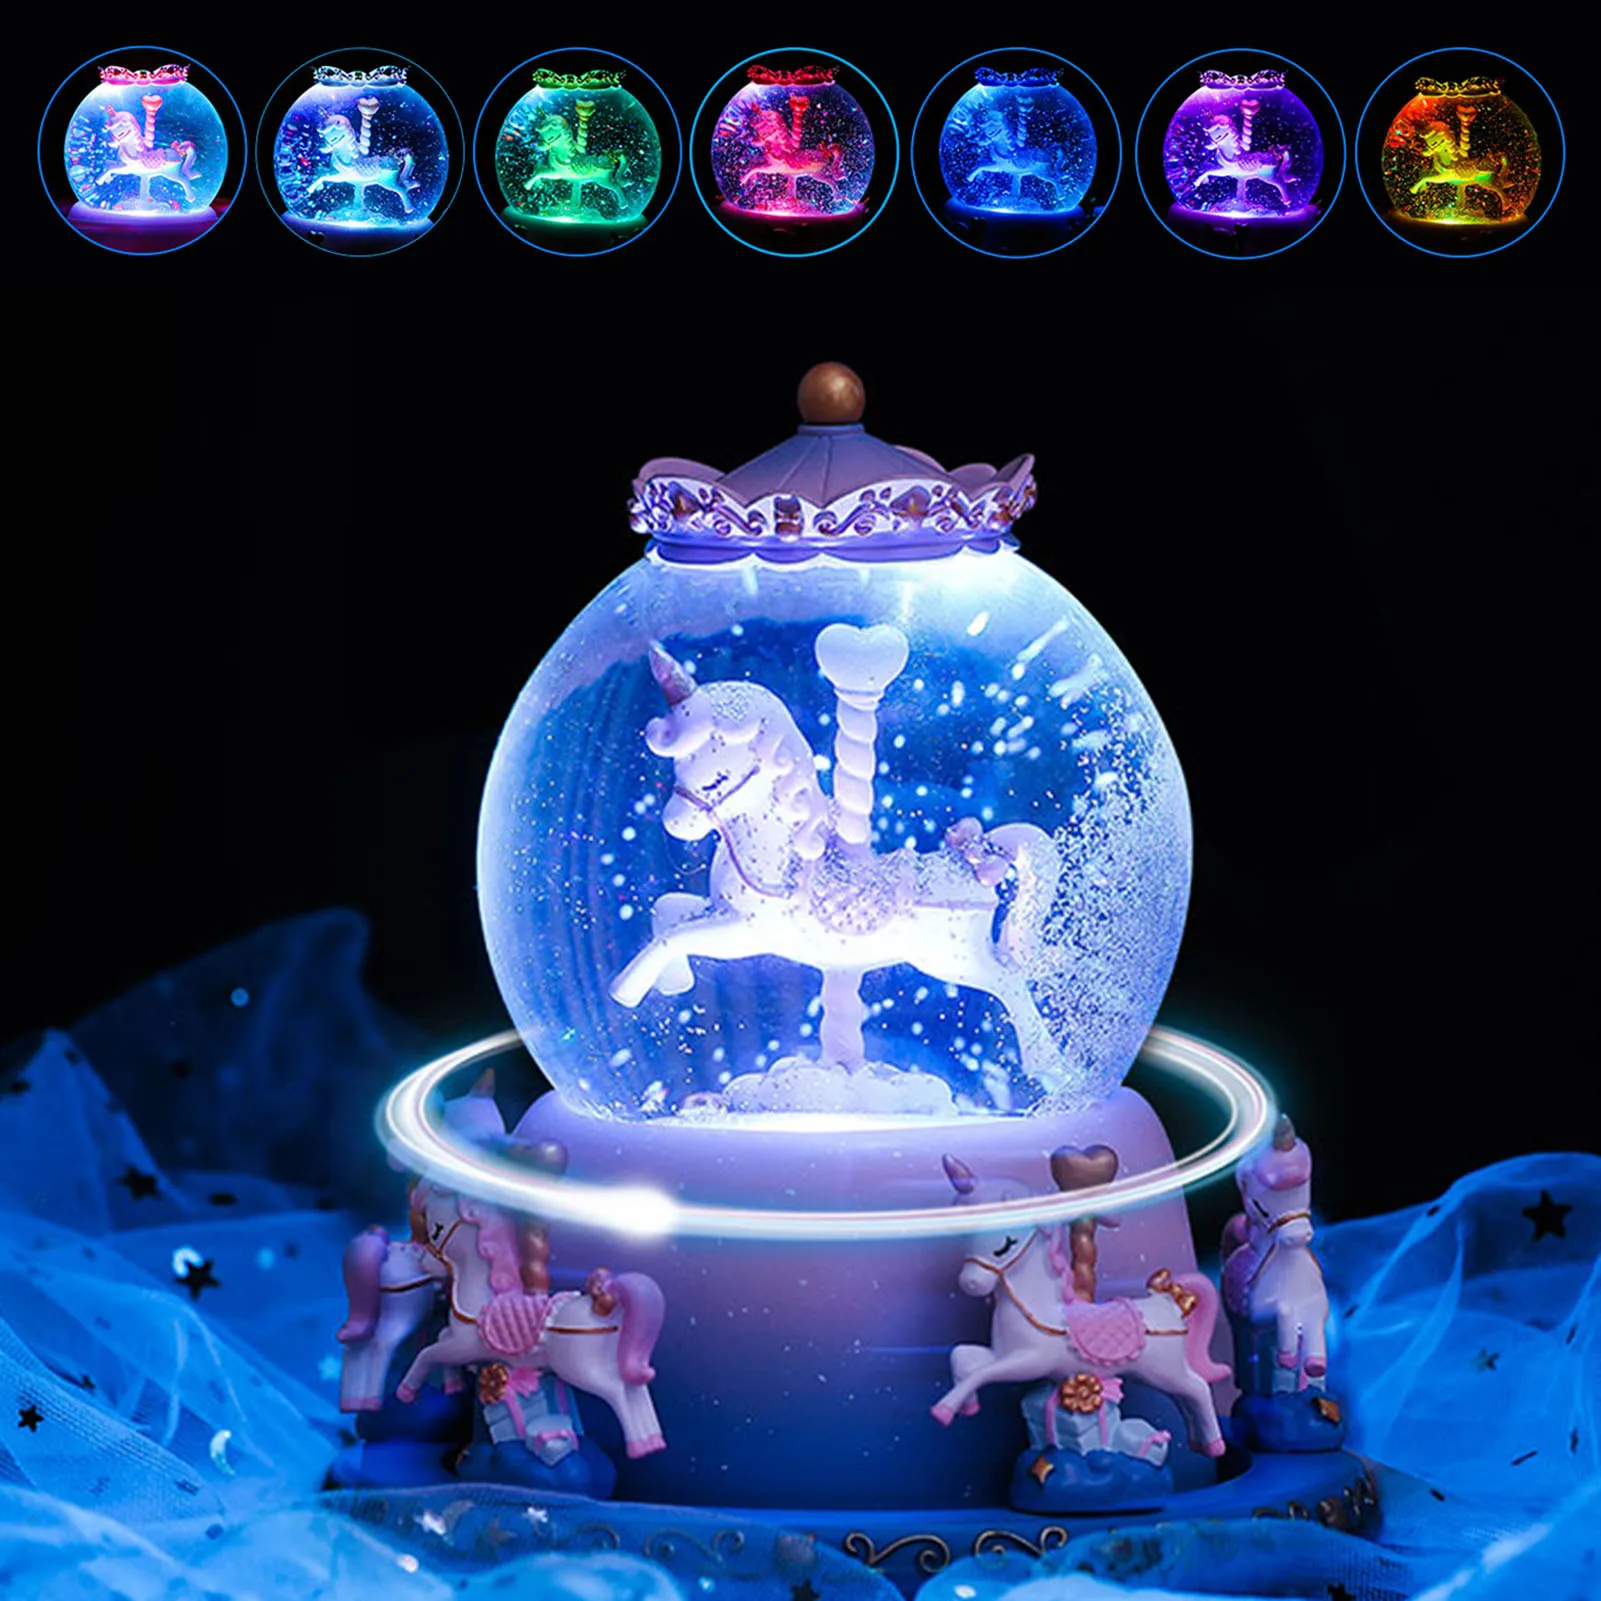 Simpatico Unicorno Rotante allInterno Palla di Neve Musicale per Bambini Decorazione per la casa Ragazza-Rosa Carillon in Resina con Melodia 